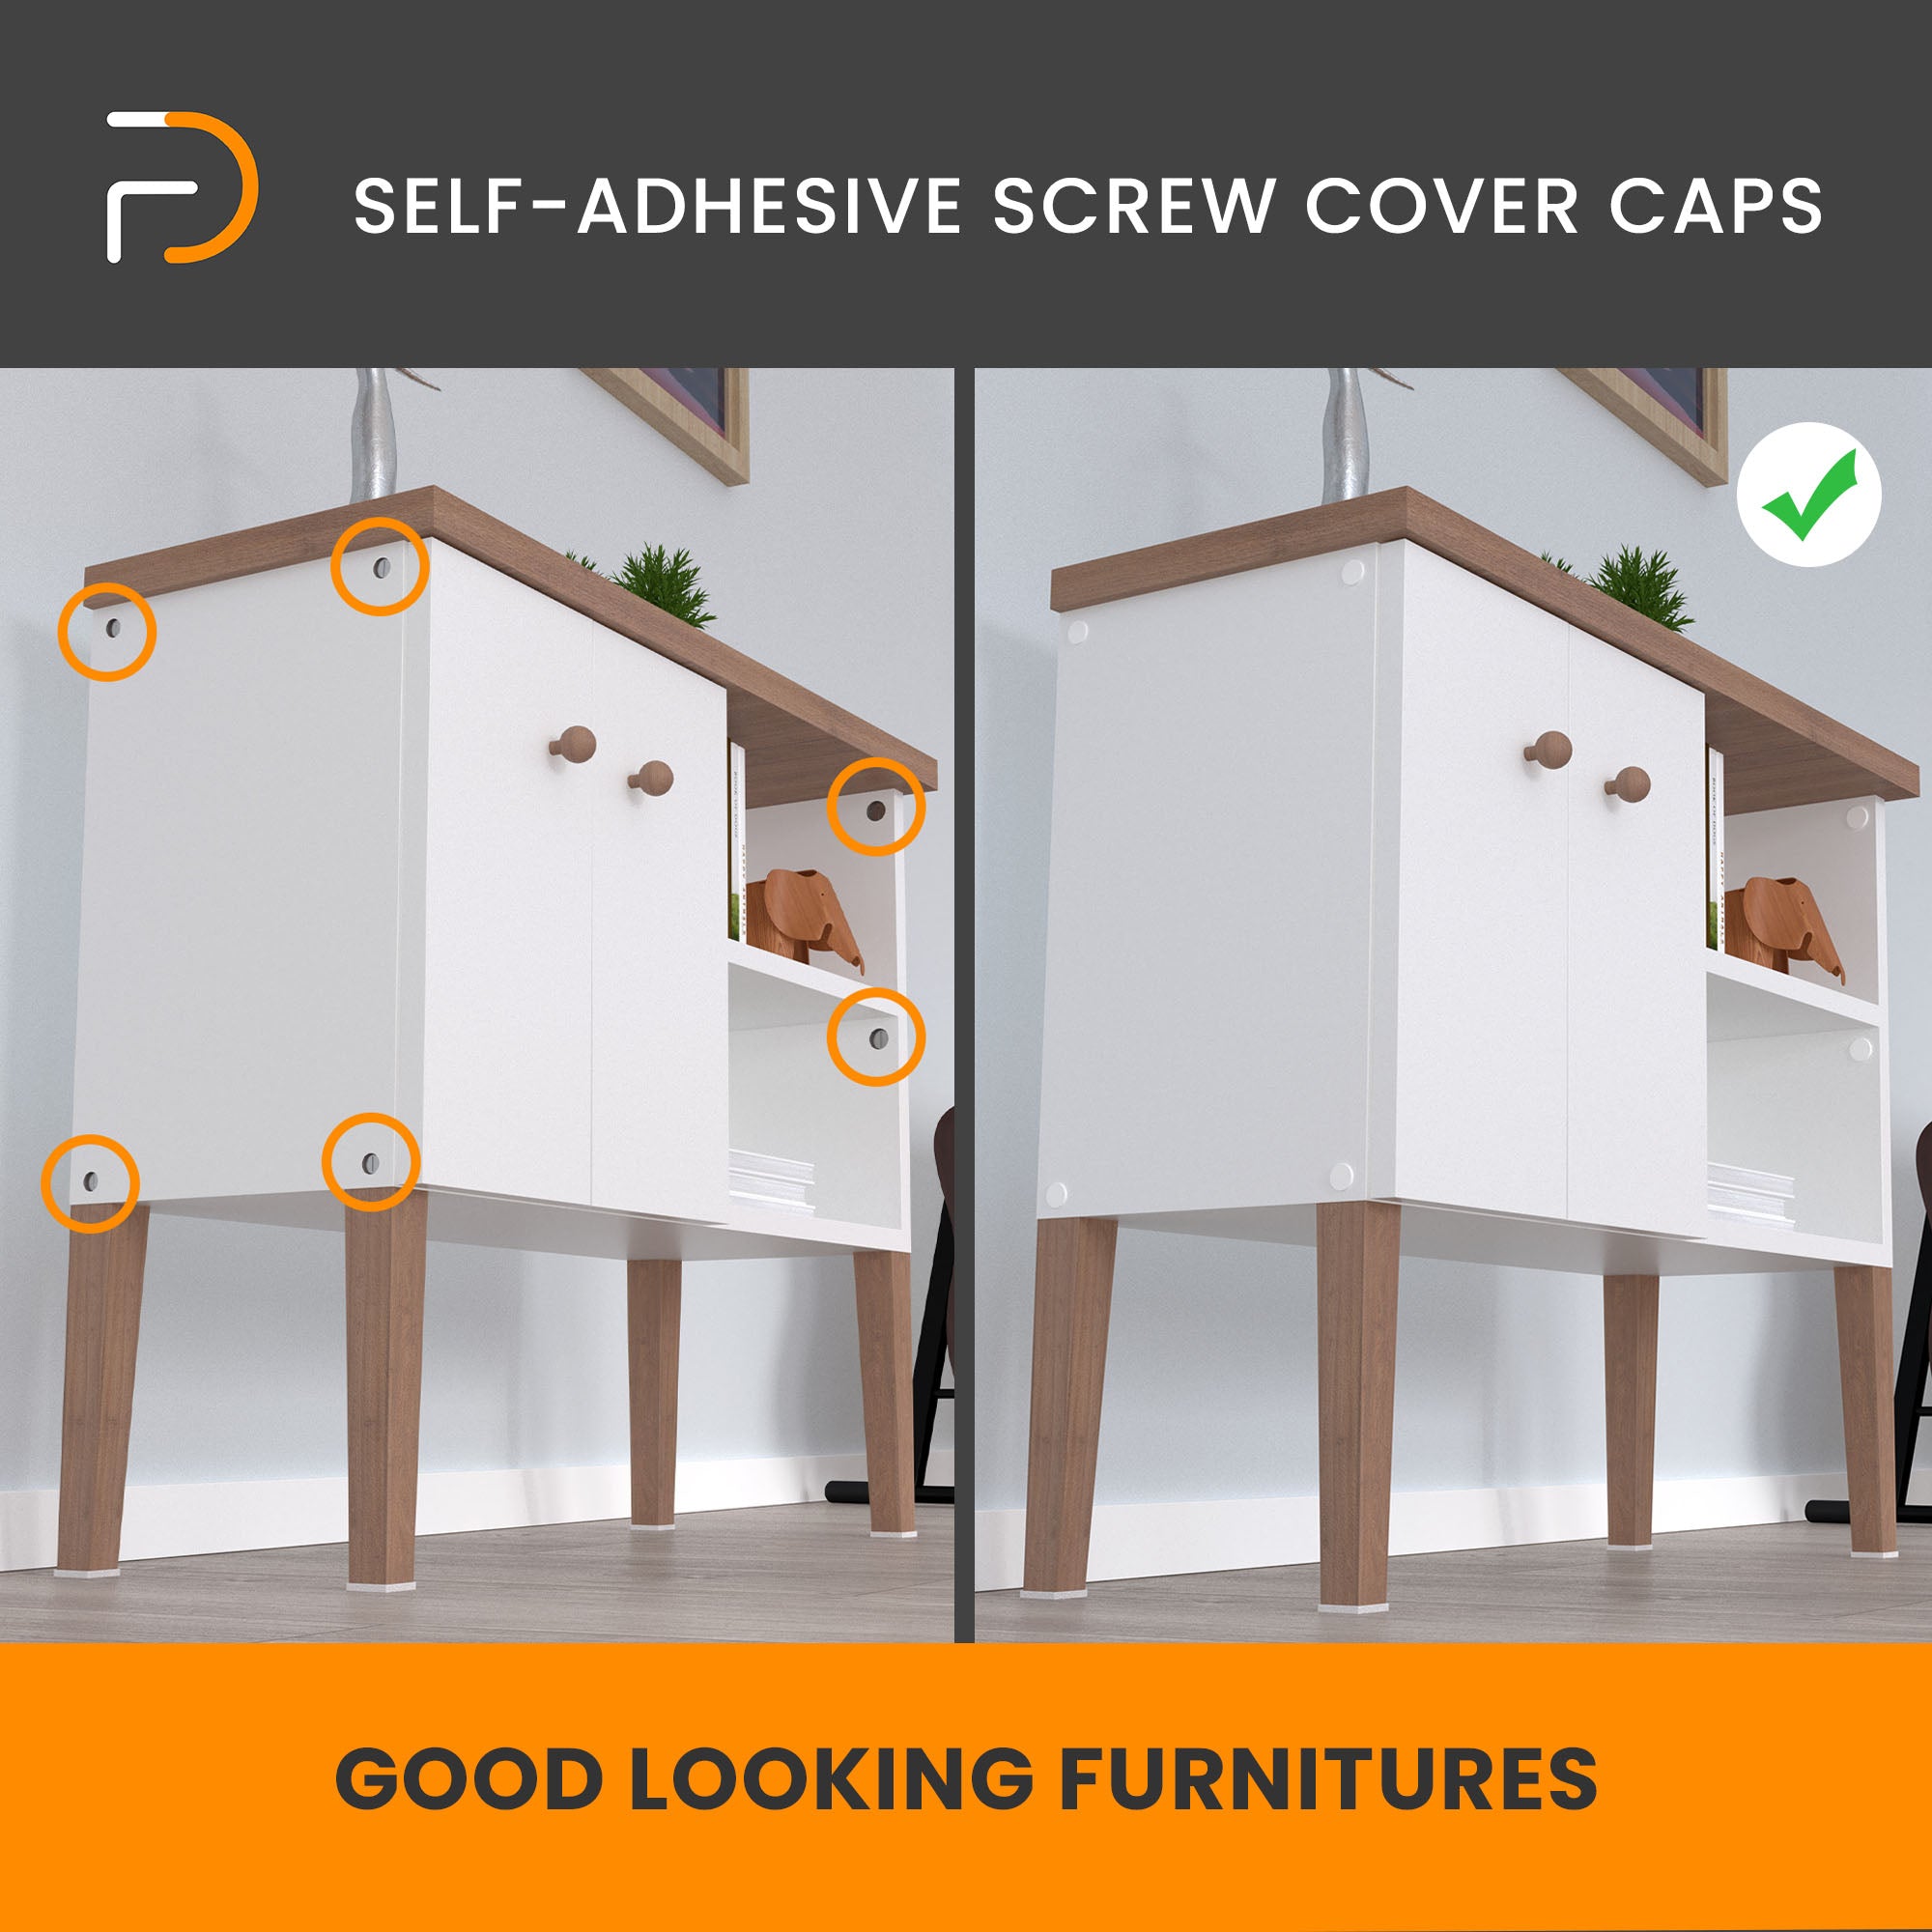 Furndiy Self-Adhesive Screw Cover Caps (Walnut)